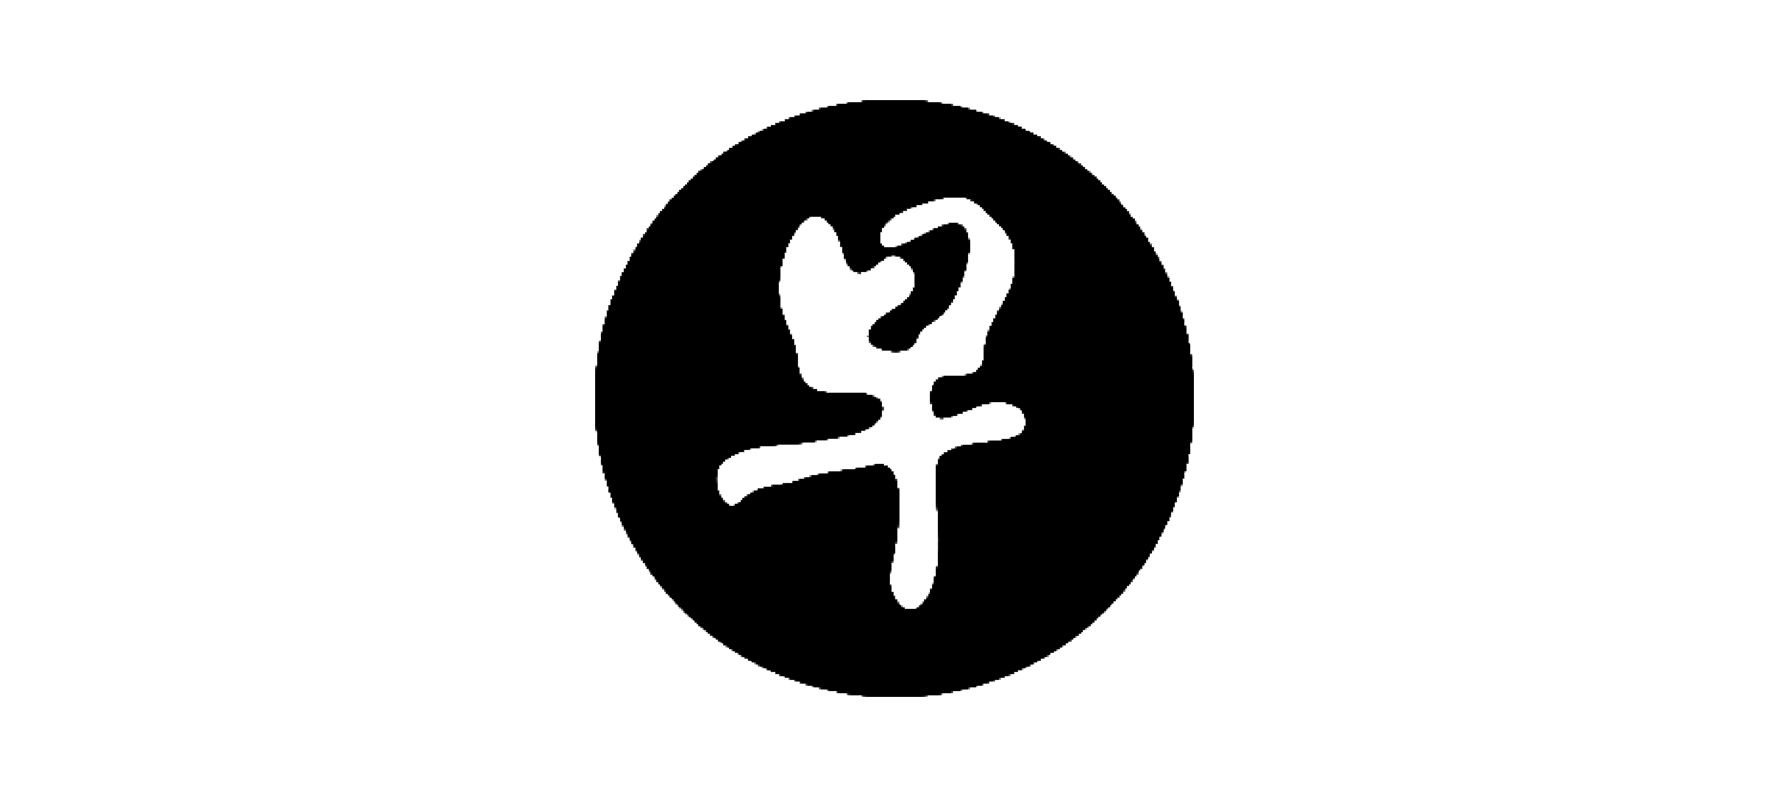 A logo for Keep a safe distance: Where we stand Zao Bao